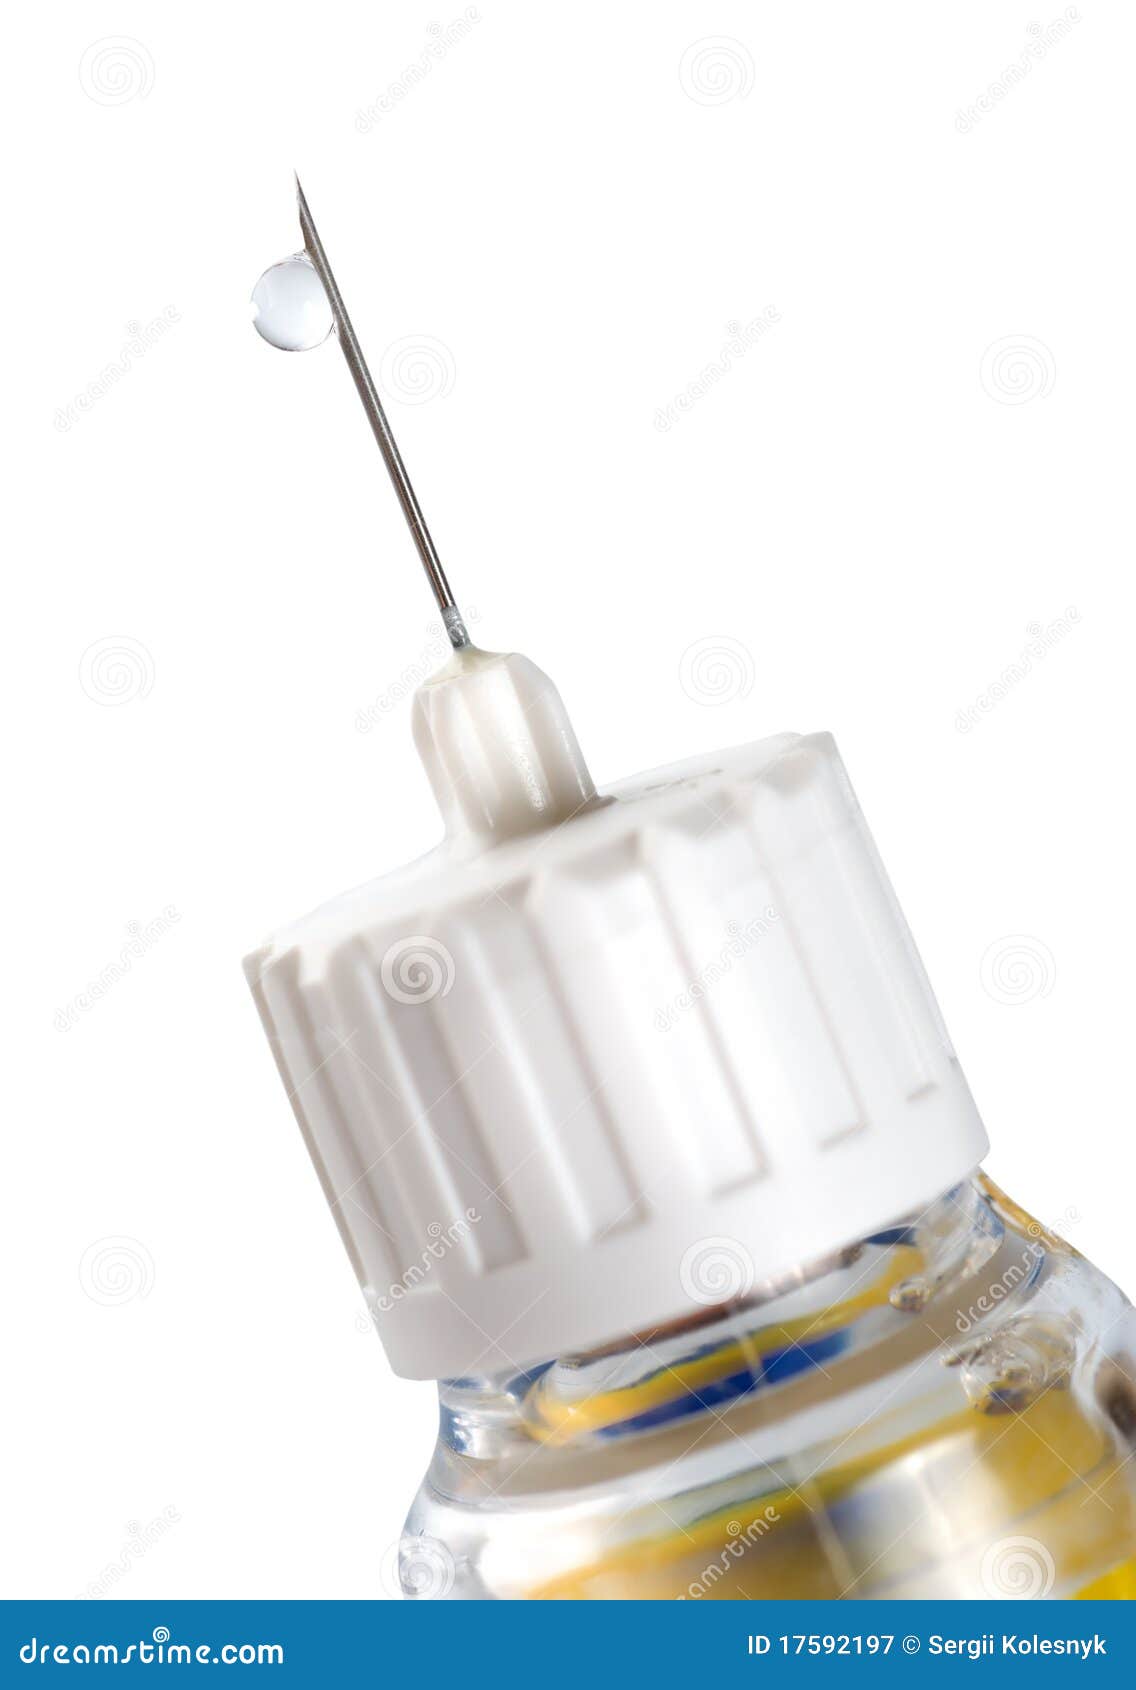 insulin pen injection